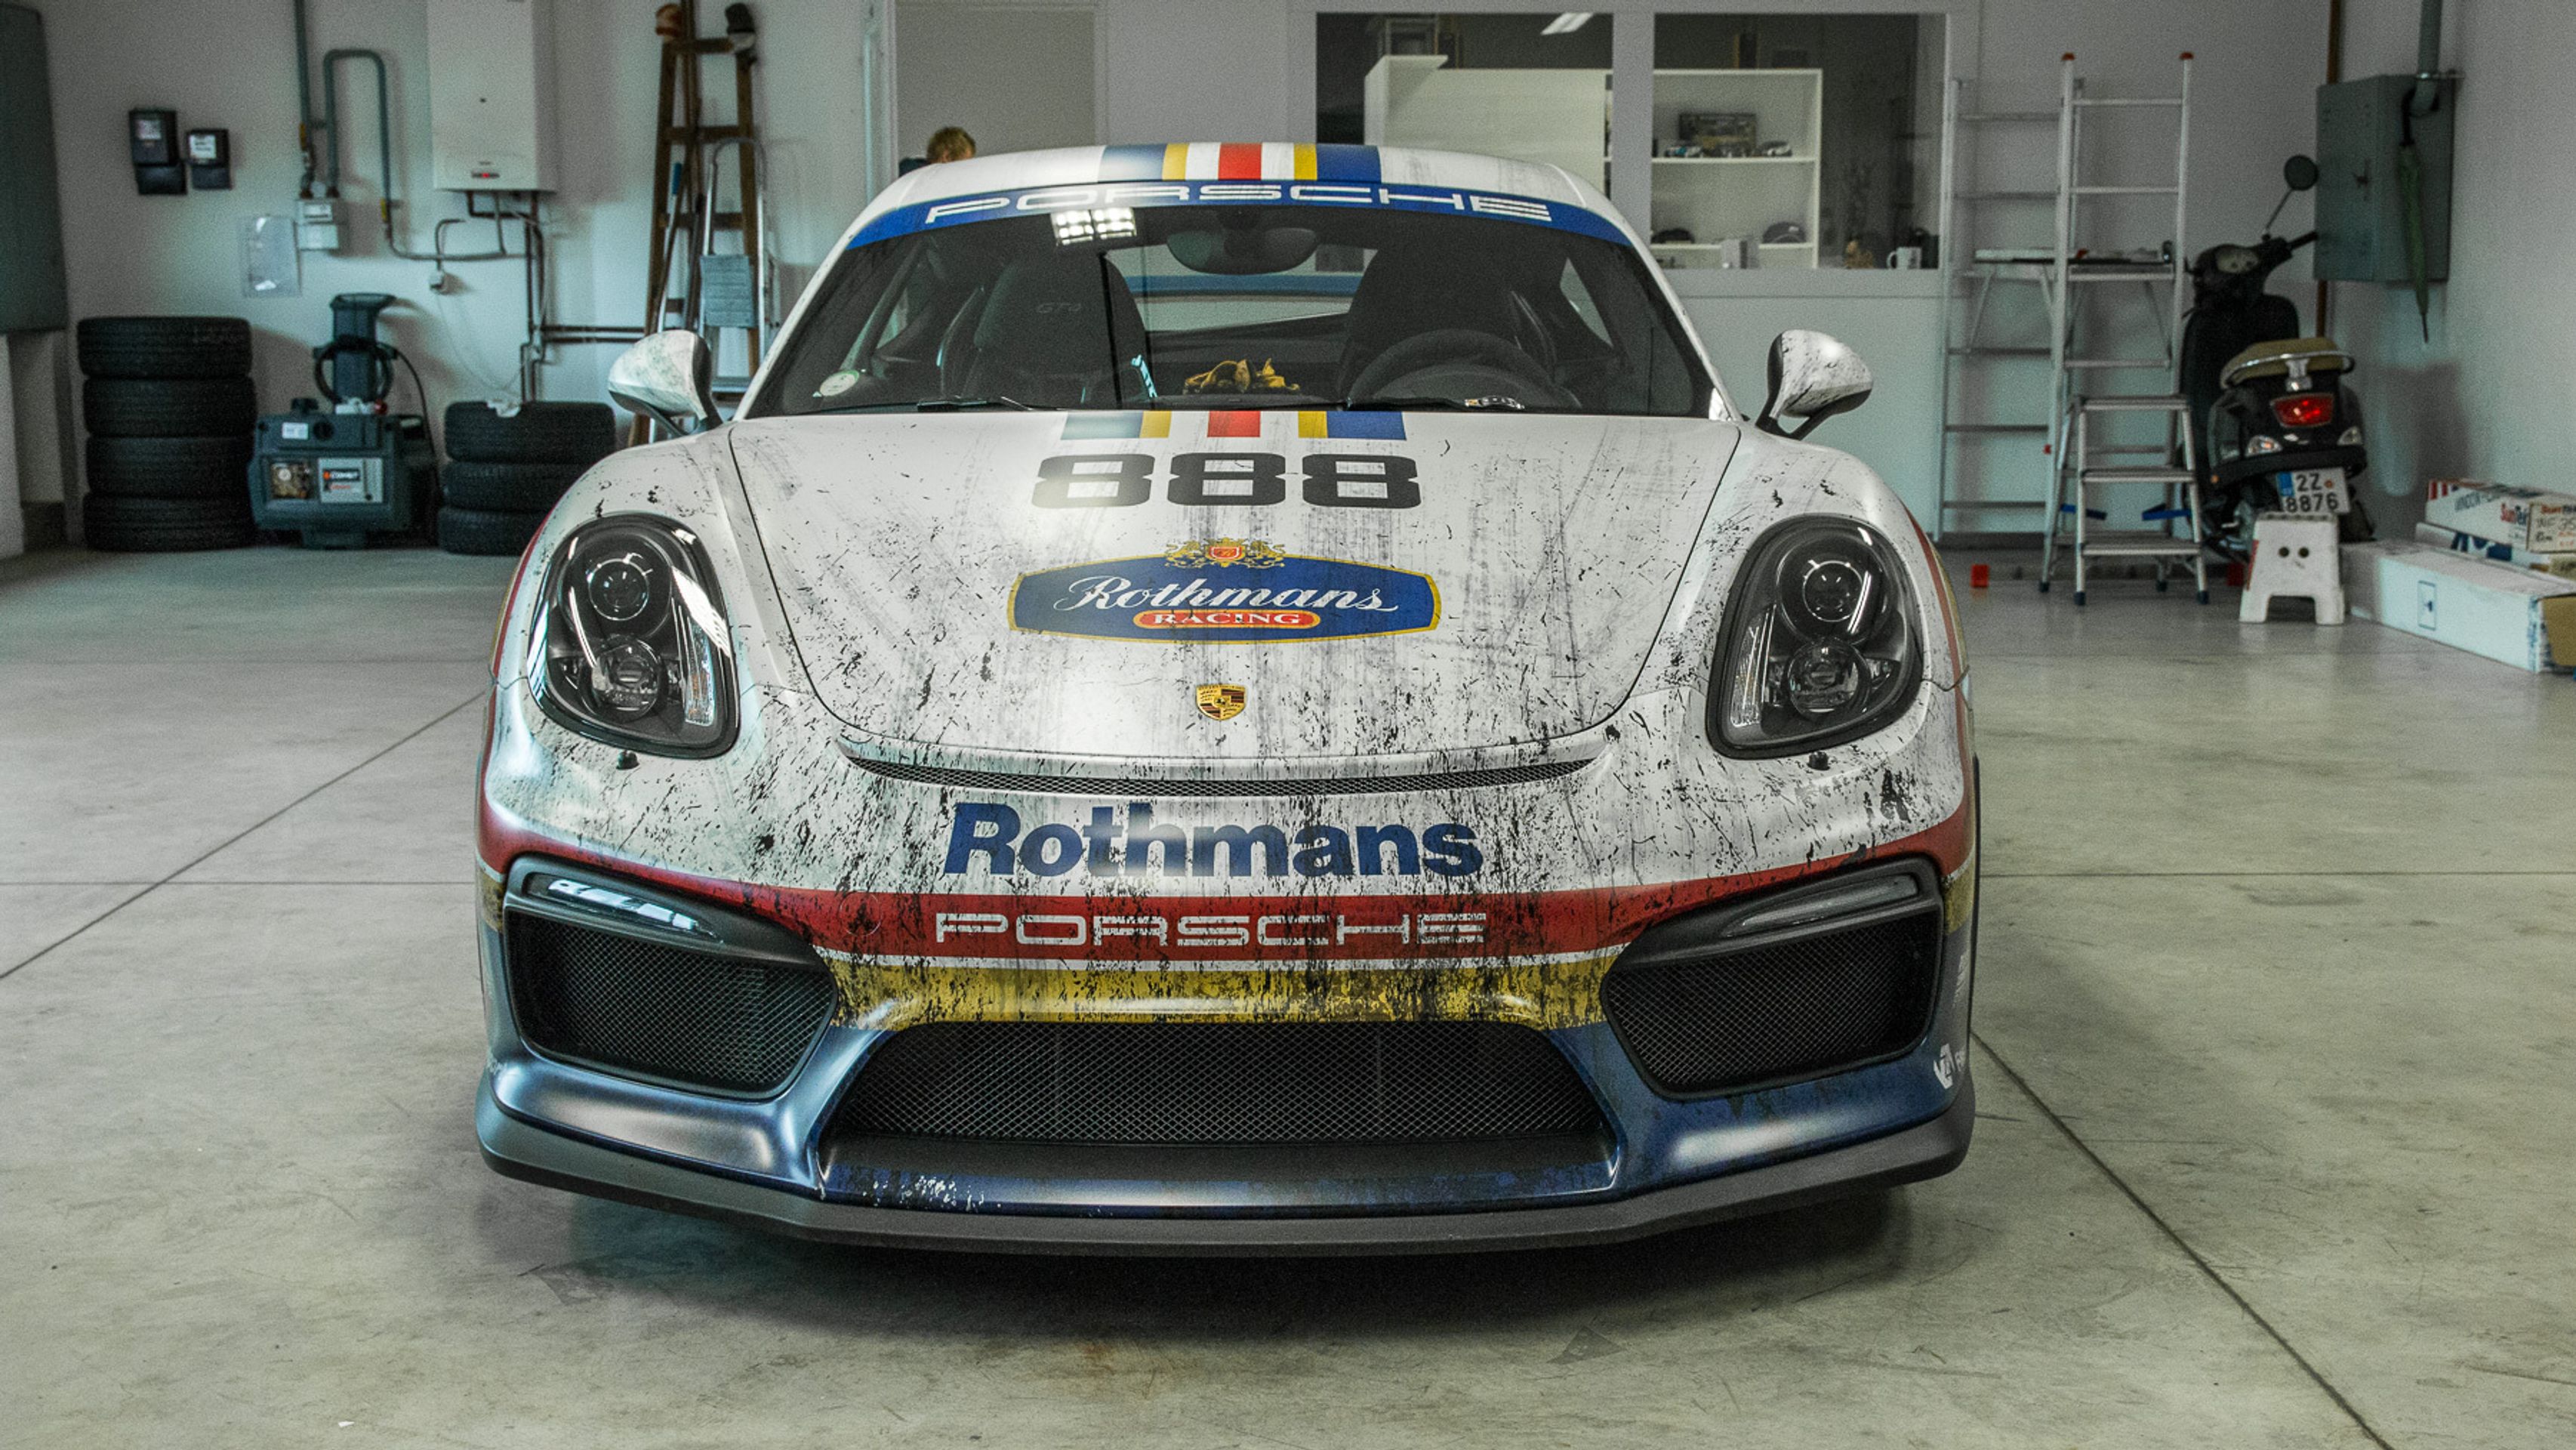 cayman - 63 - GALERIE: Porsche Cayman GT4 Rothmans (25/37)